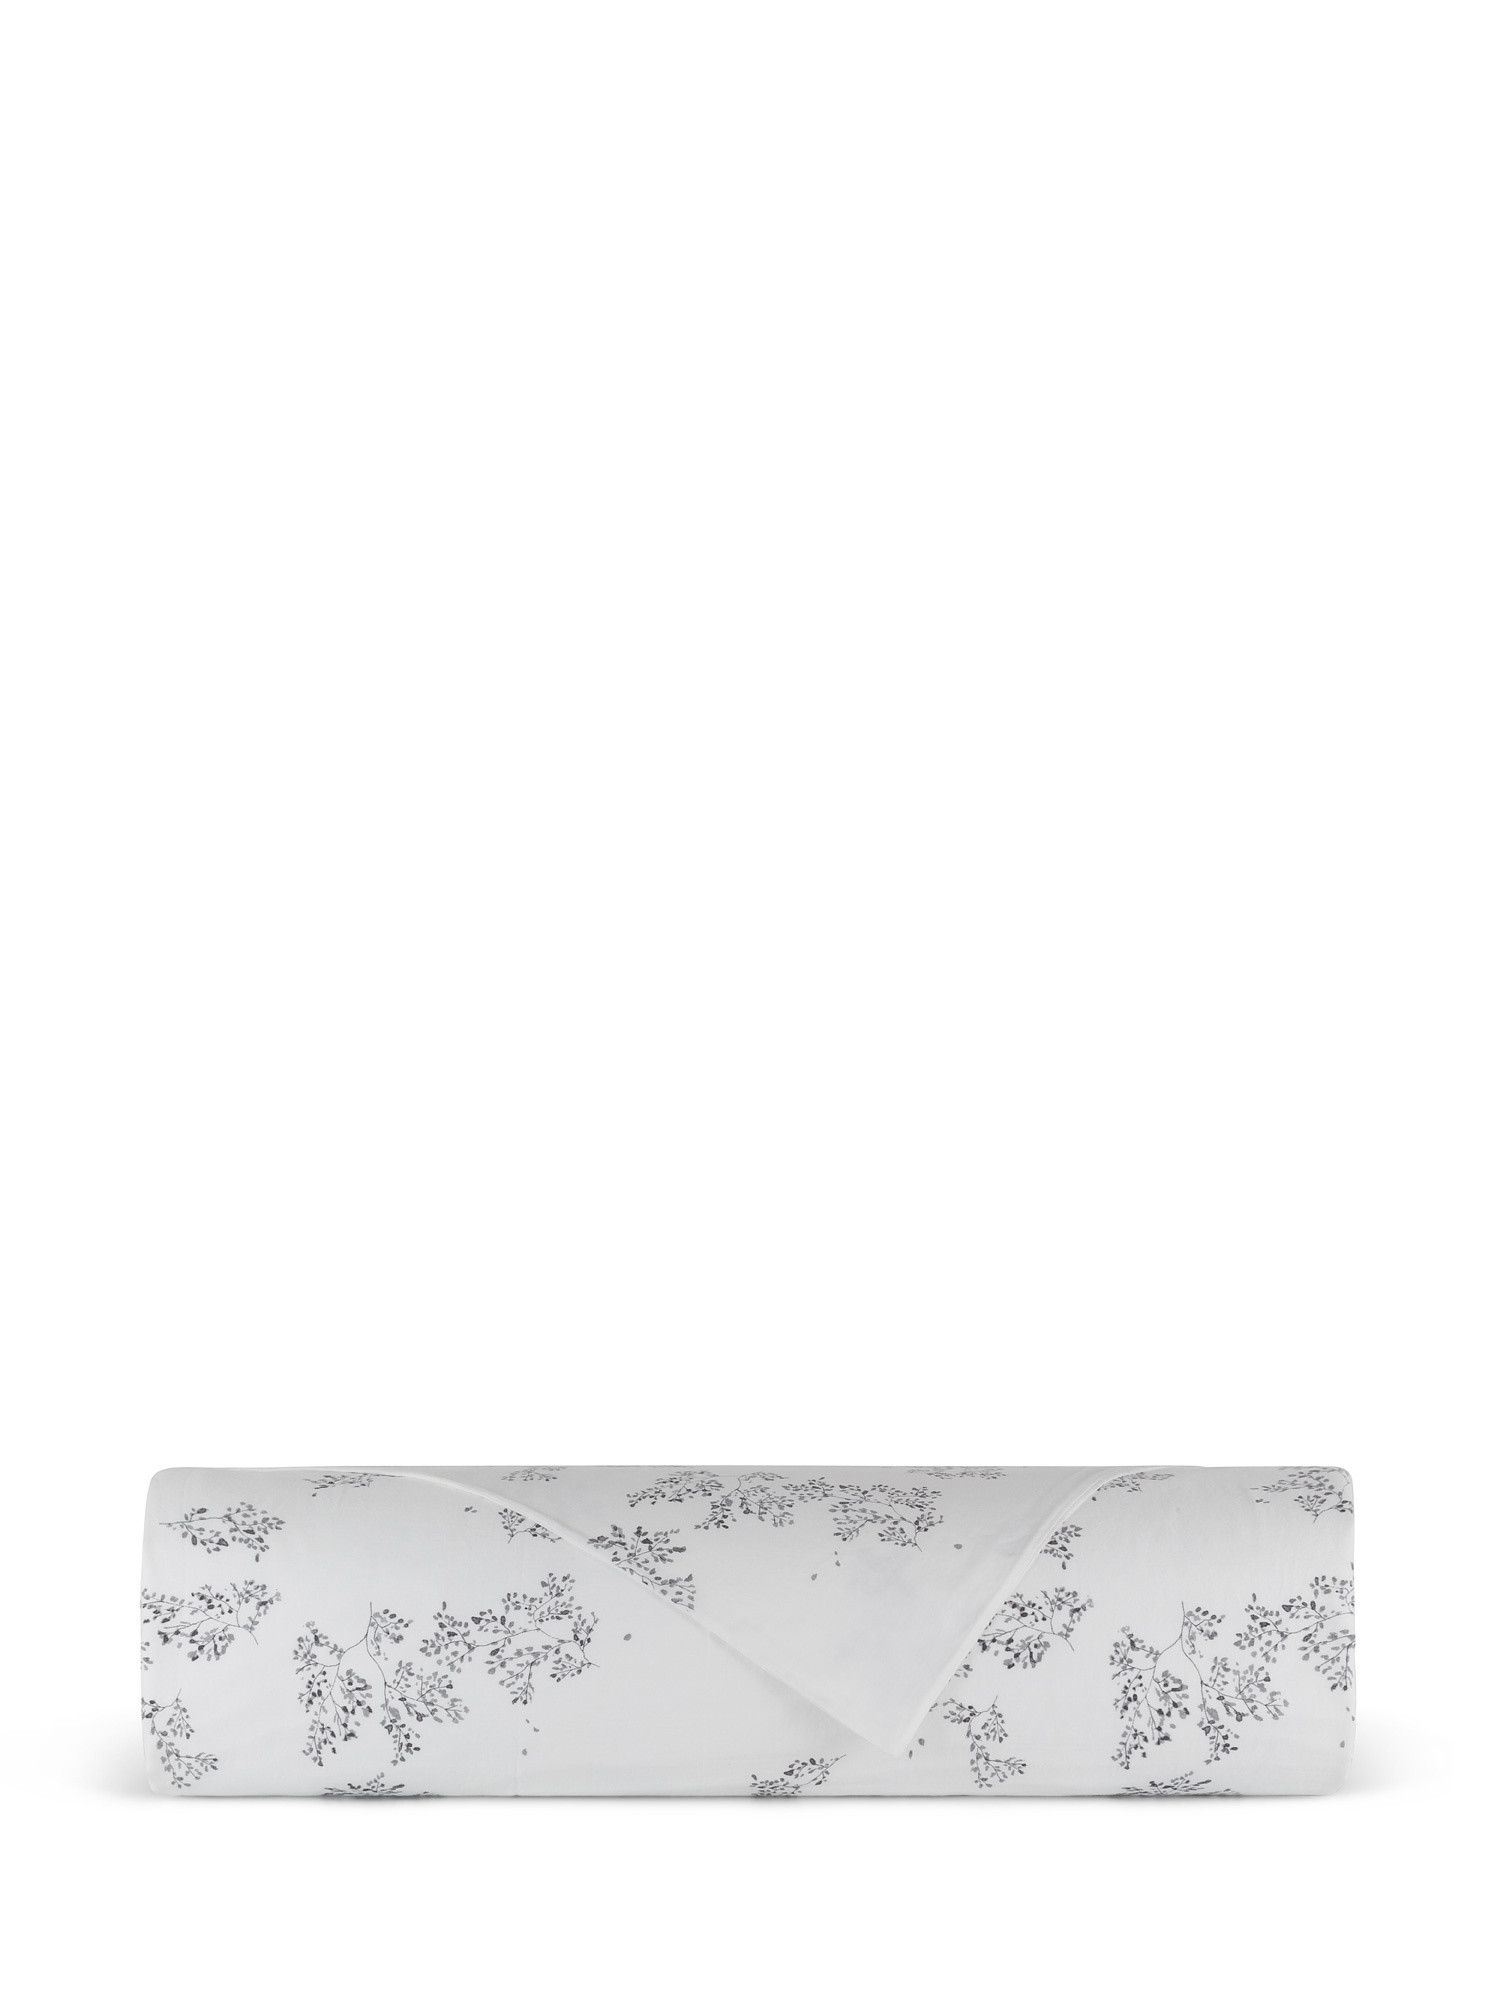 Portofino cotton satin flat sheet with ramage motif, White, large image number 1